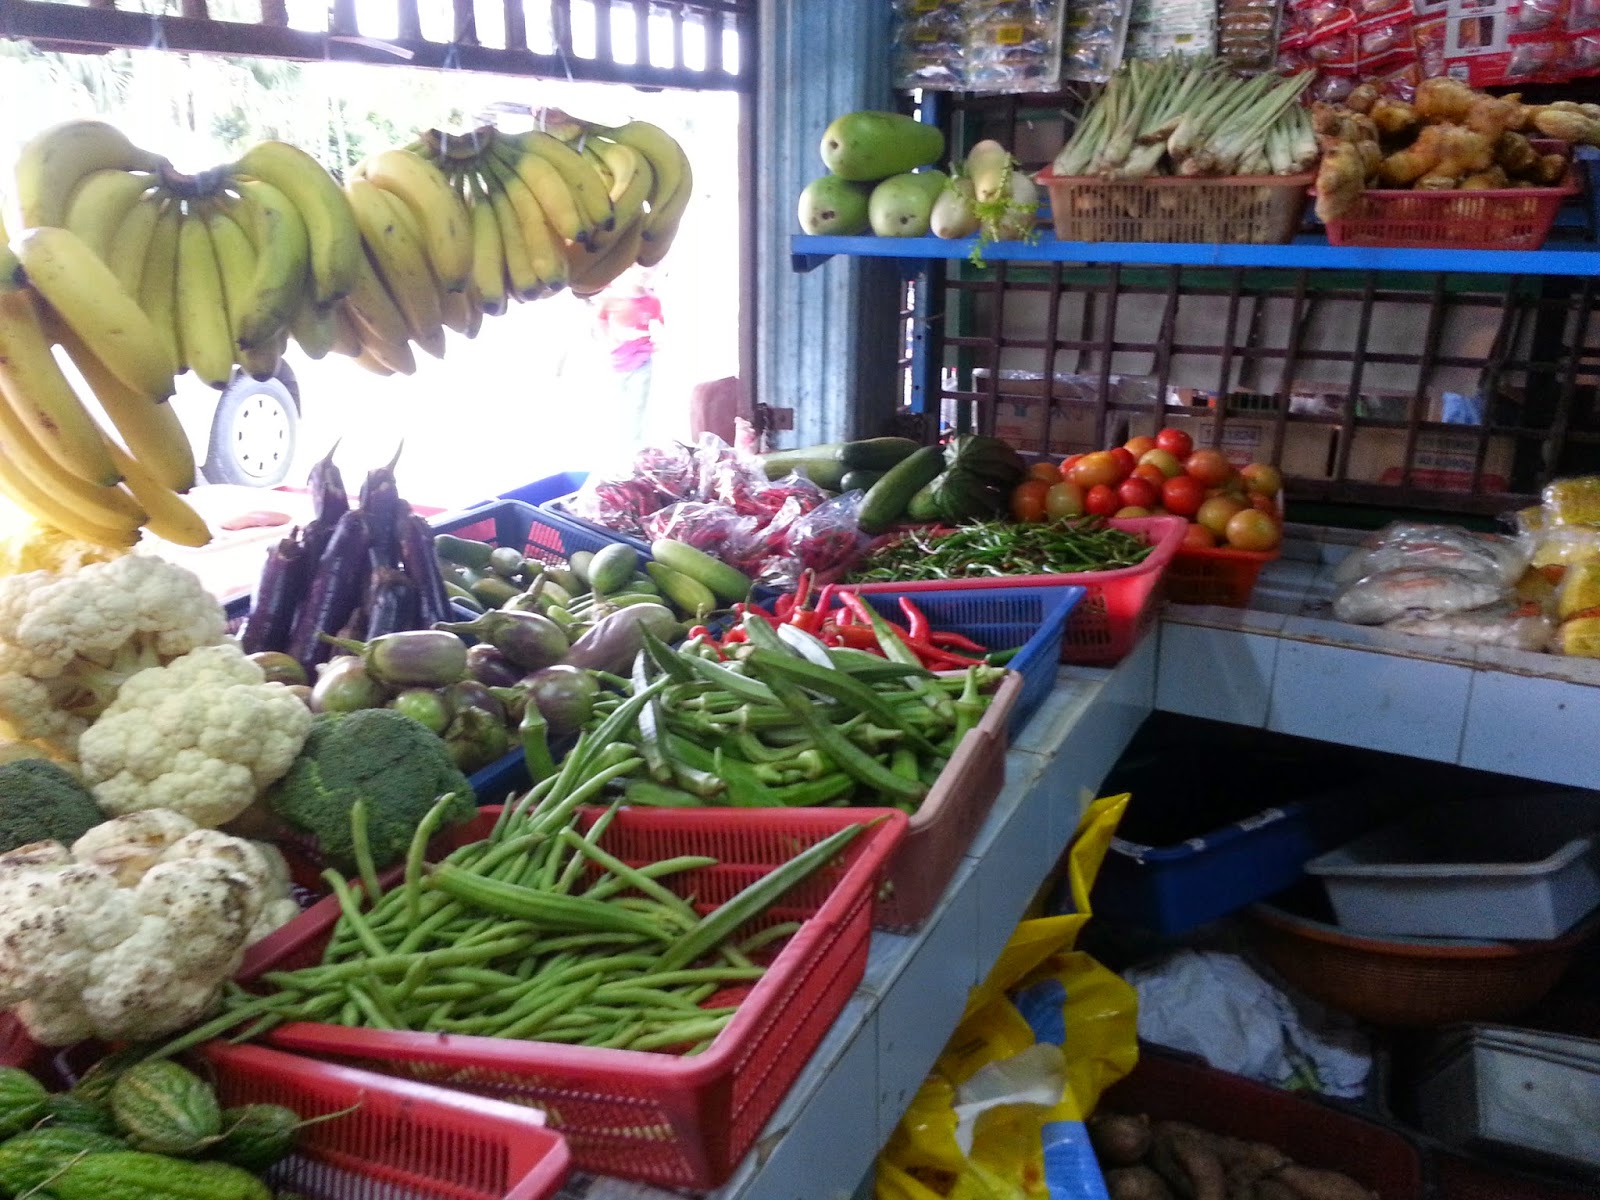 PetuniaLee™: Gelang Patah Grocery Store